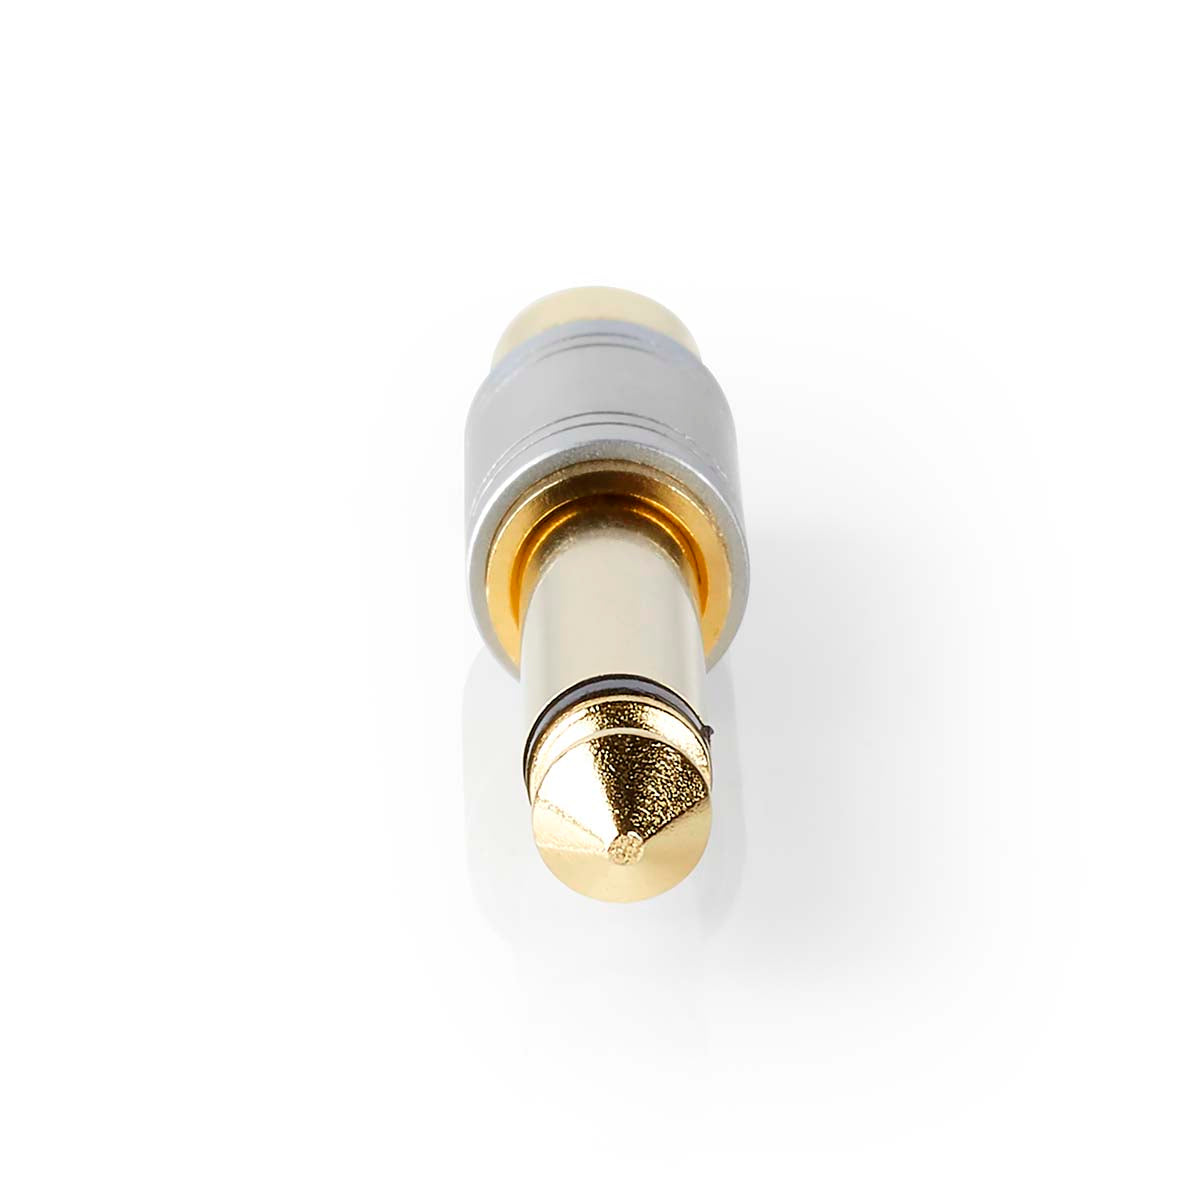 Mono-Audio-Adapter | 6.35 mm Stecker | Cinch Buchse | Vergoldet | Gerade | Metall | Silber | 1 Stück | Box